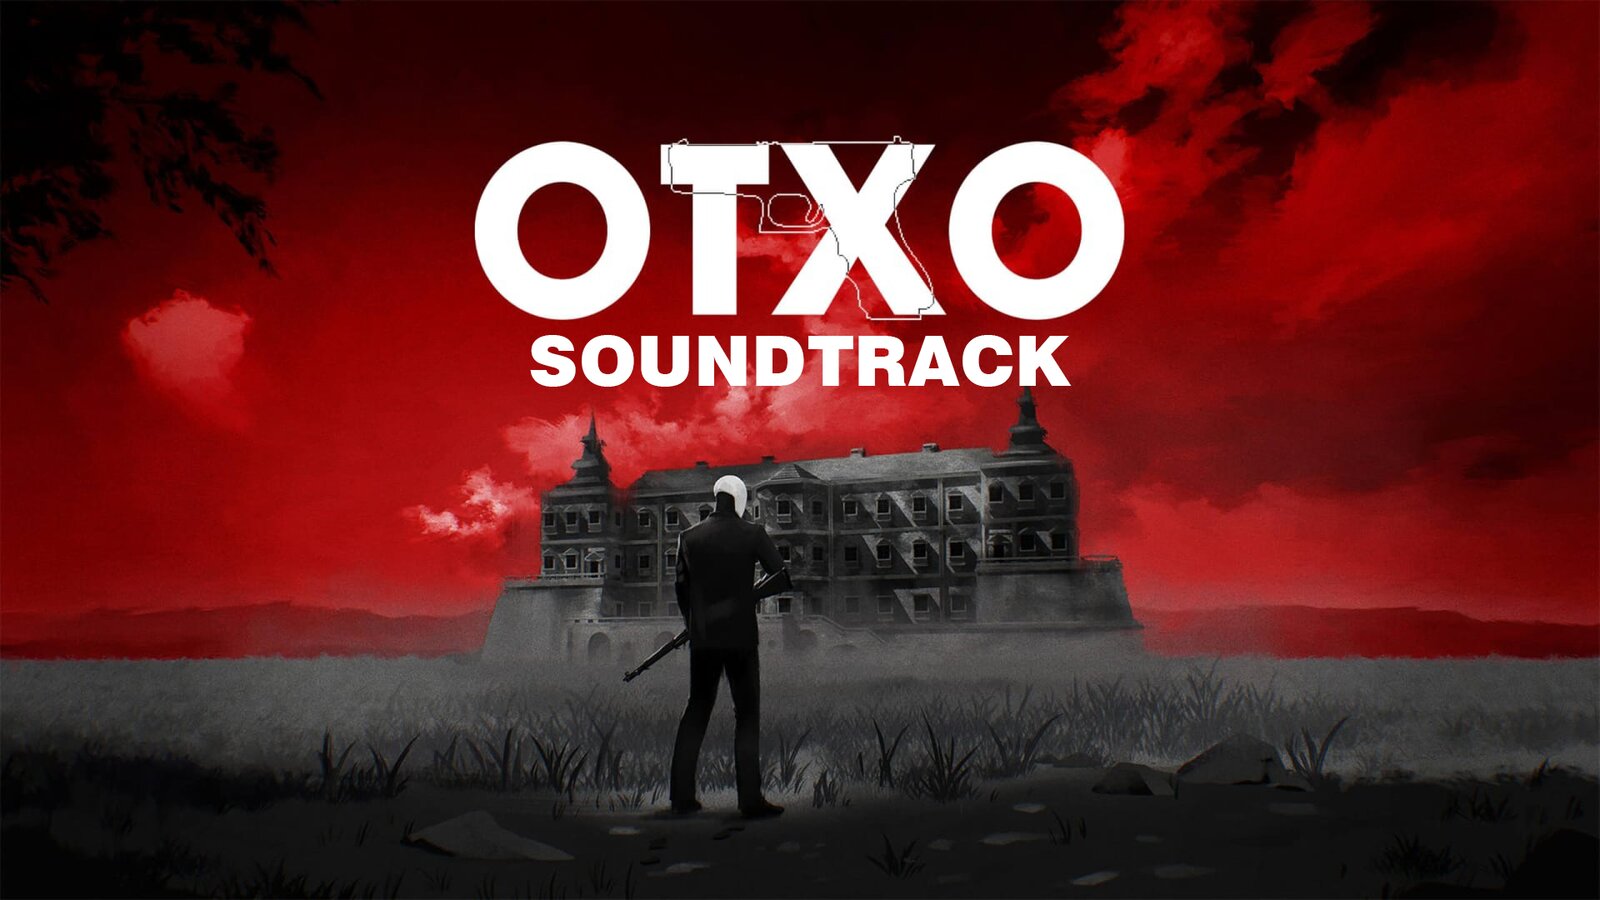 OTXO - Soundtrack